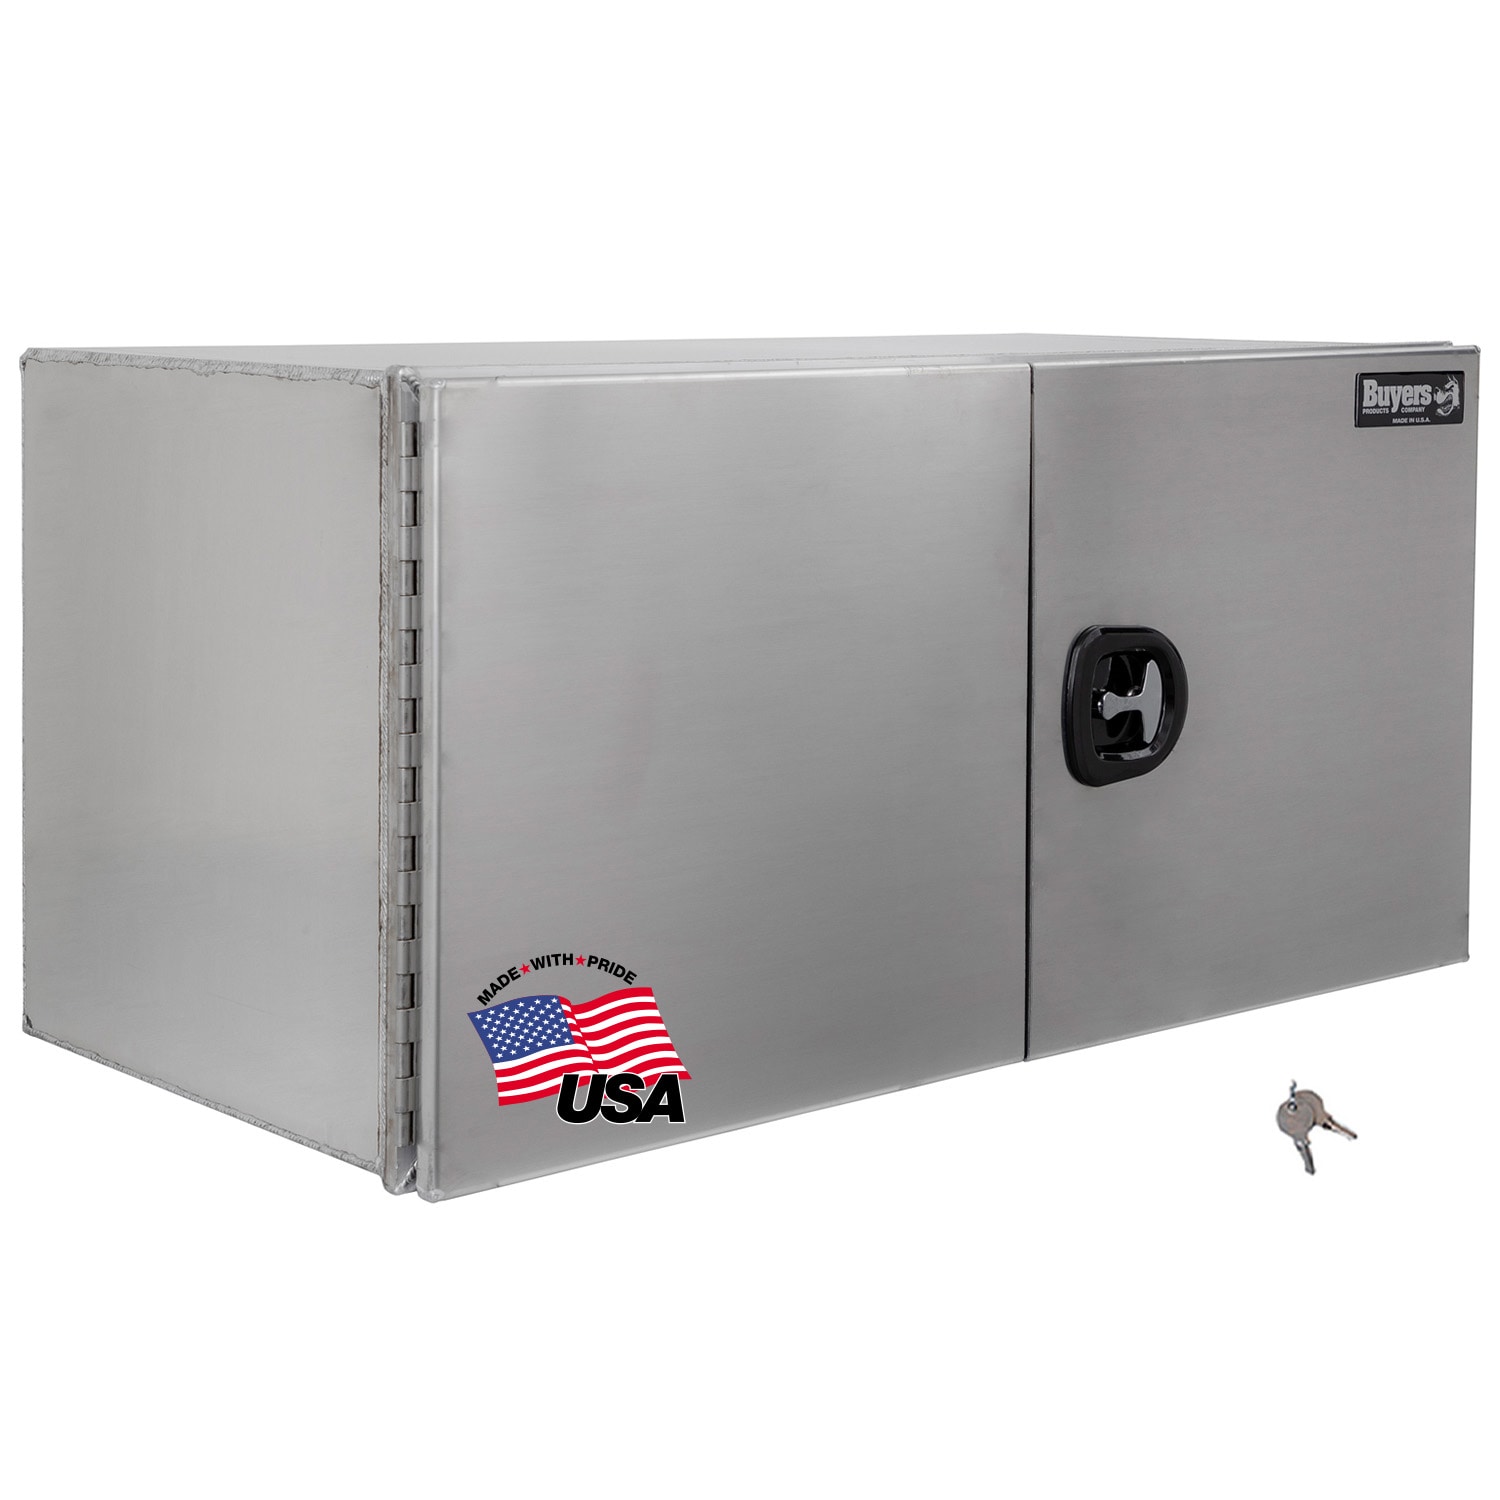 UWS EC20252 - 48 Aluminum Chest Box